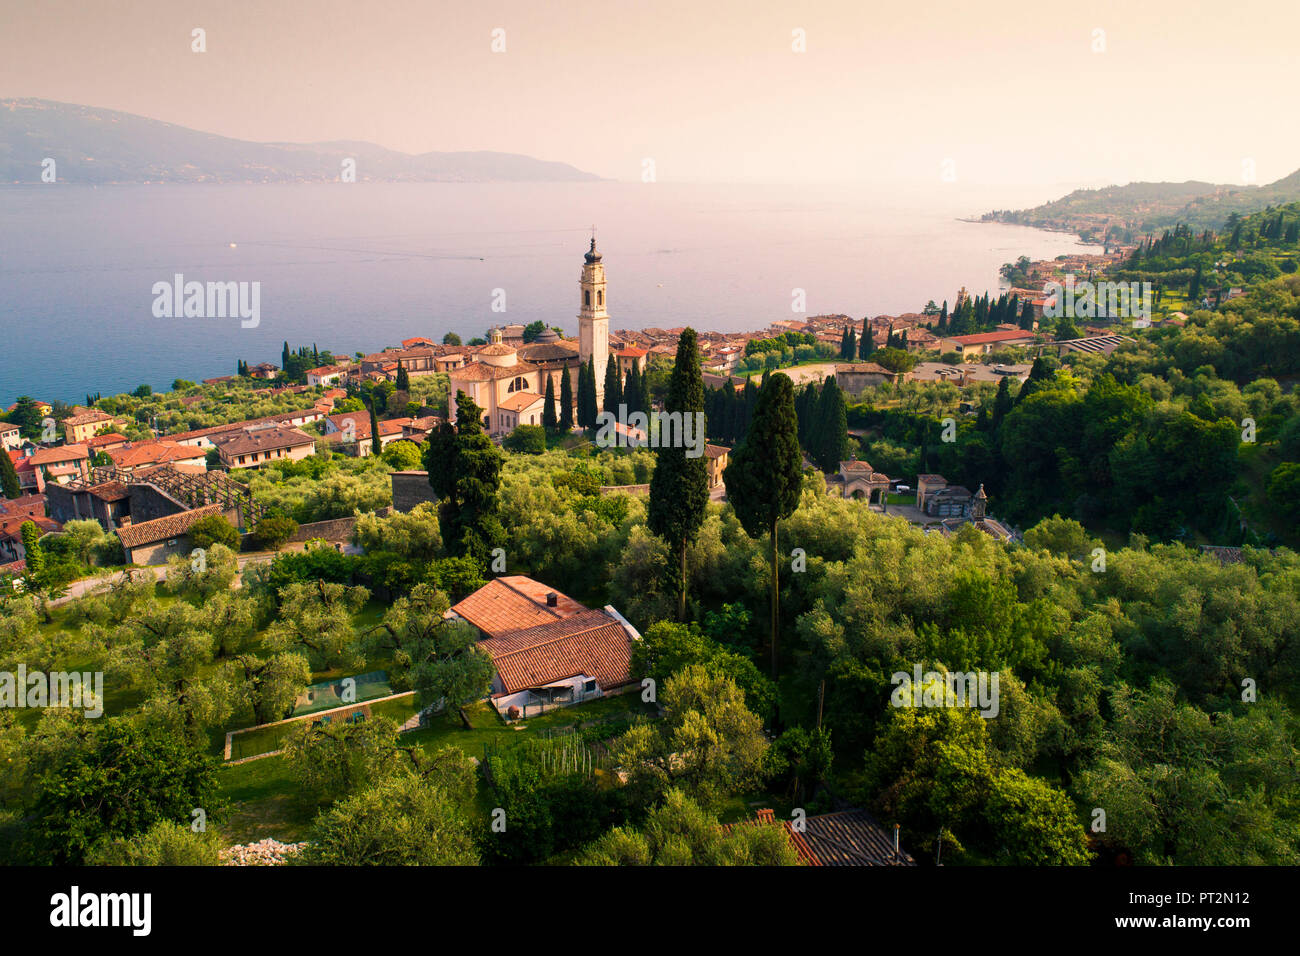 Vista in elevazione di Gargnano, un piccolo villaggio sul lago di Garda costa, distretto di Brescia, Lombardia, Italia Foto Stock